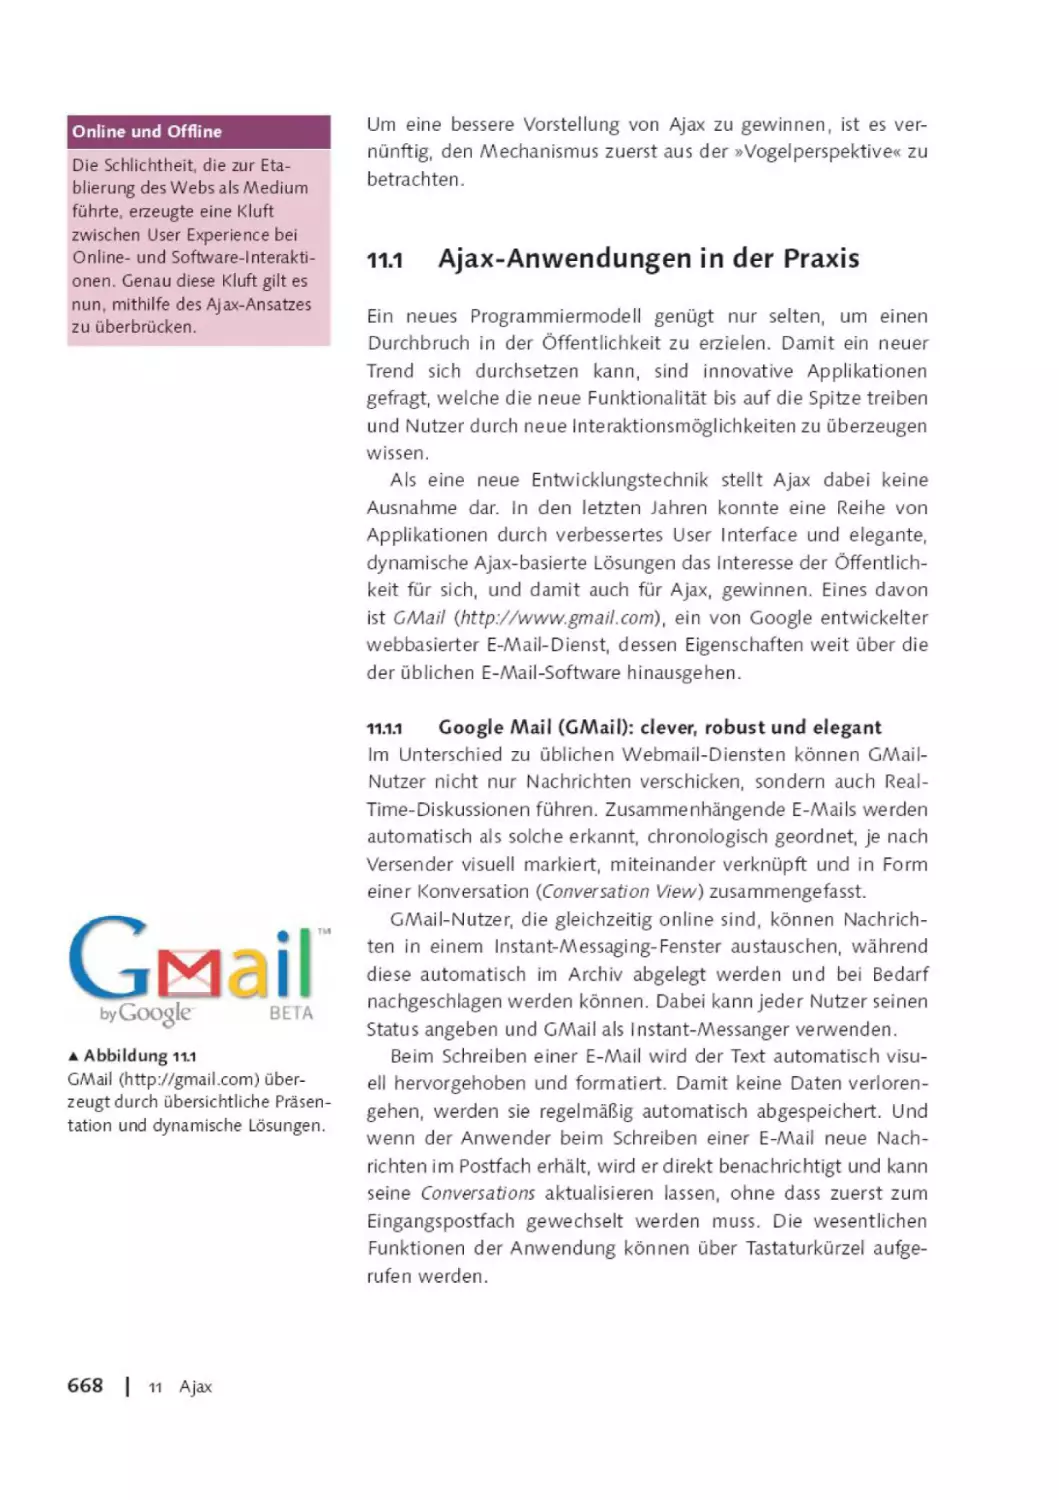 11.1      Ajax-Anwendungen in der Praxis
11.1.1      Google Mail (GMail)